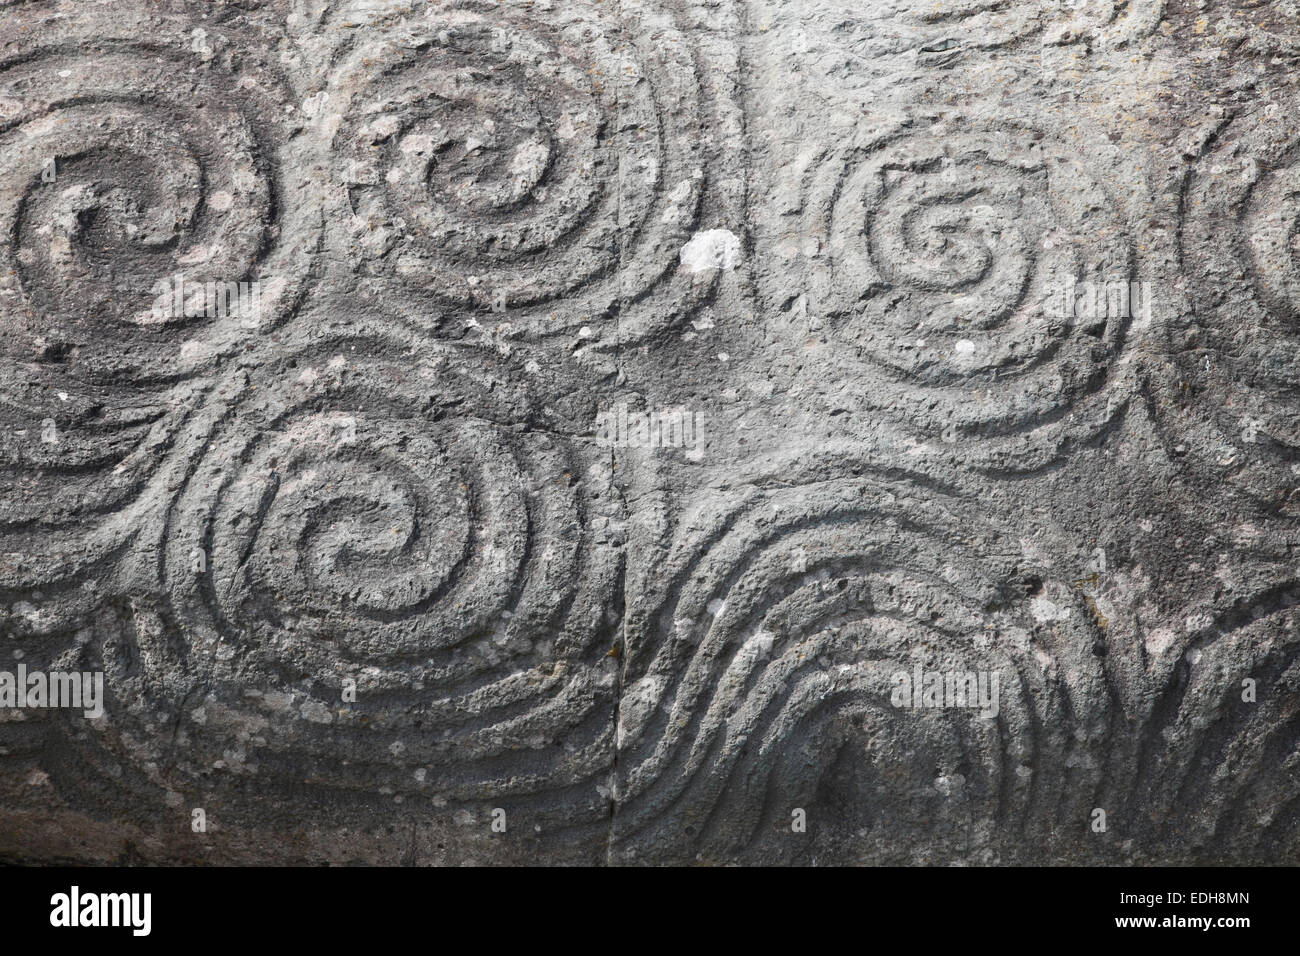 La triple spirale (Symbole celtique) gravé sur une pierre à l'entrée de Newgrange, Bru na Boinne, comté de Meath, Irlande Banque D'Images